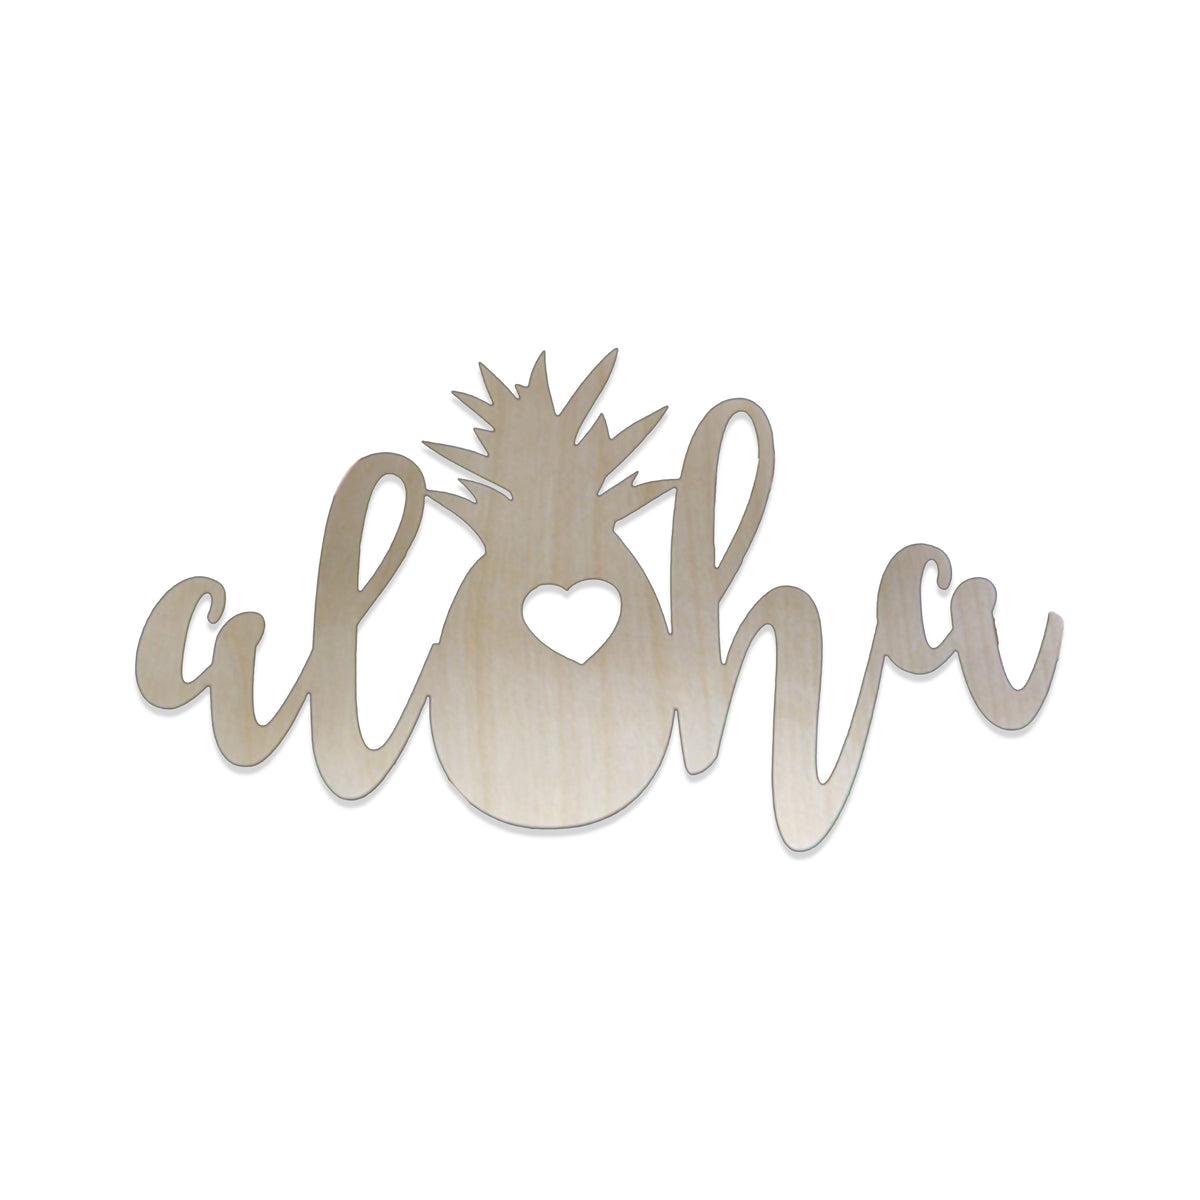 Pop-Up Mākeke - Aloha Overstock - Laser Cut Aloha Pineapple Wood Cutout